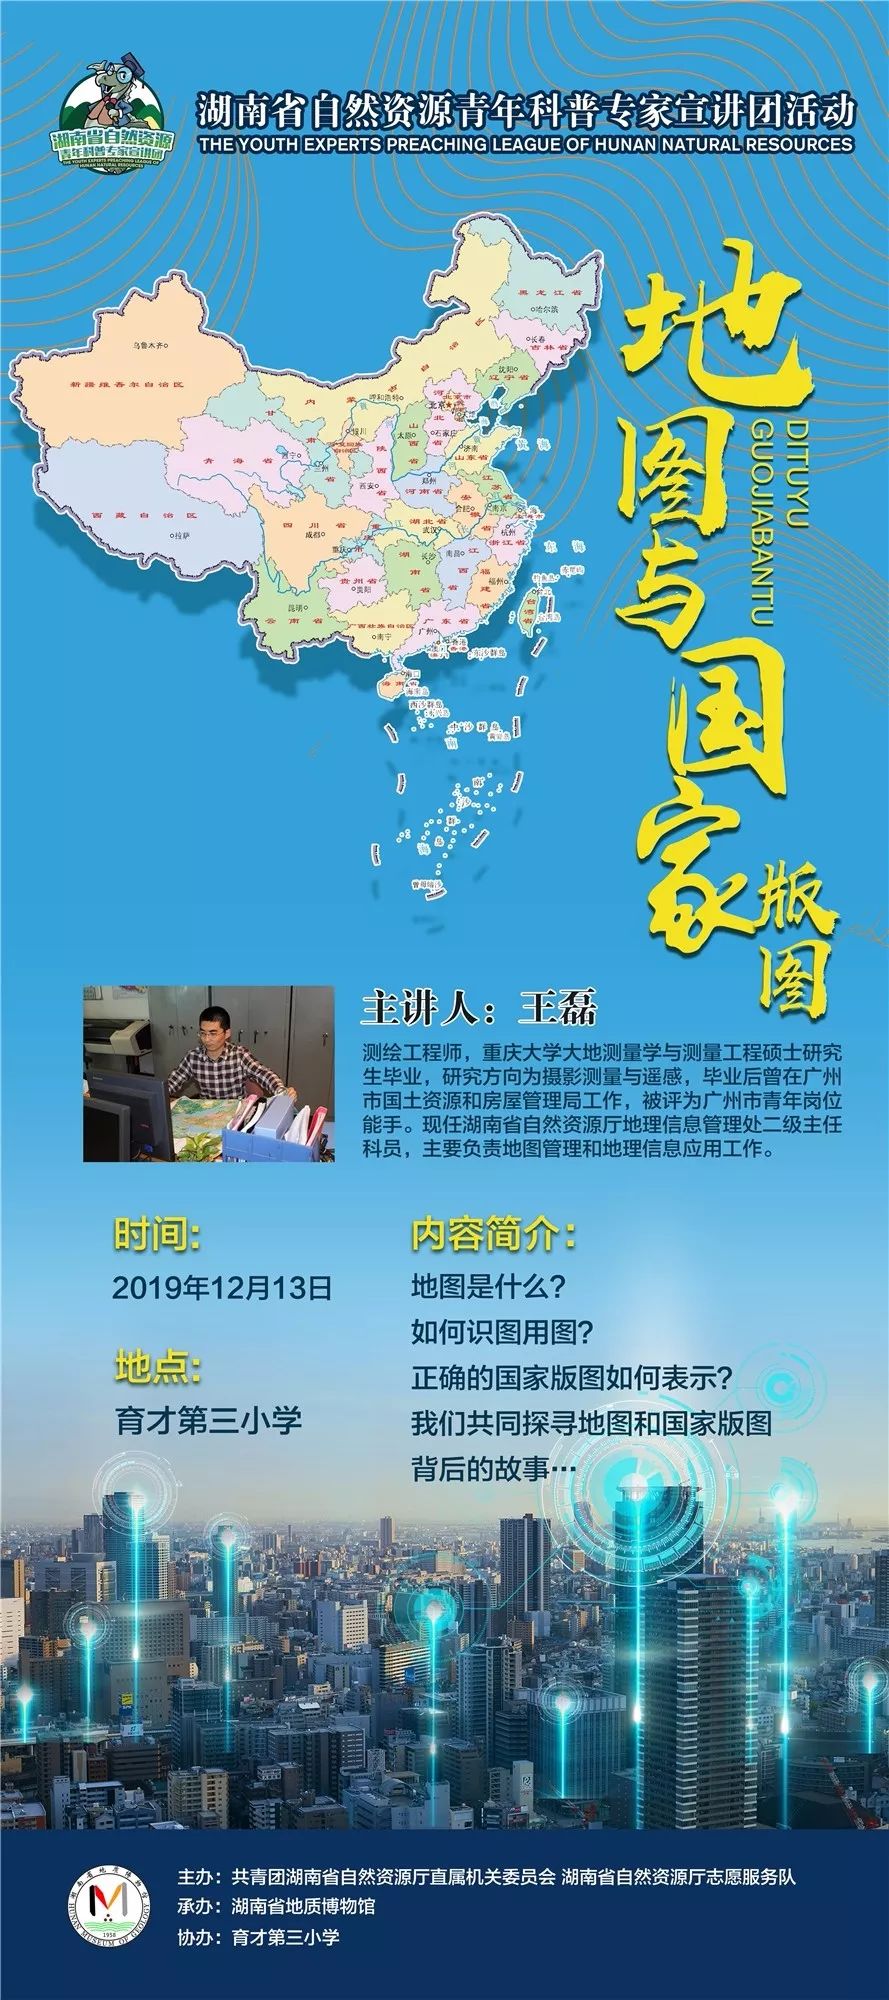 缪斯慕推介湖南省地质博物馆年度展览活动海报赏